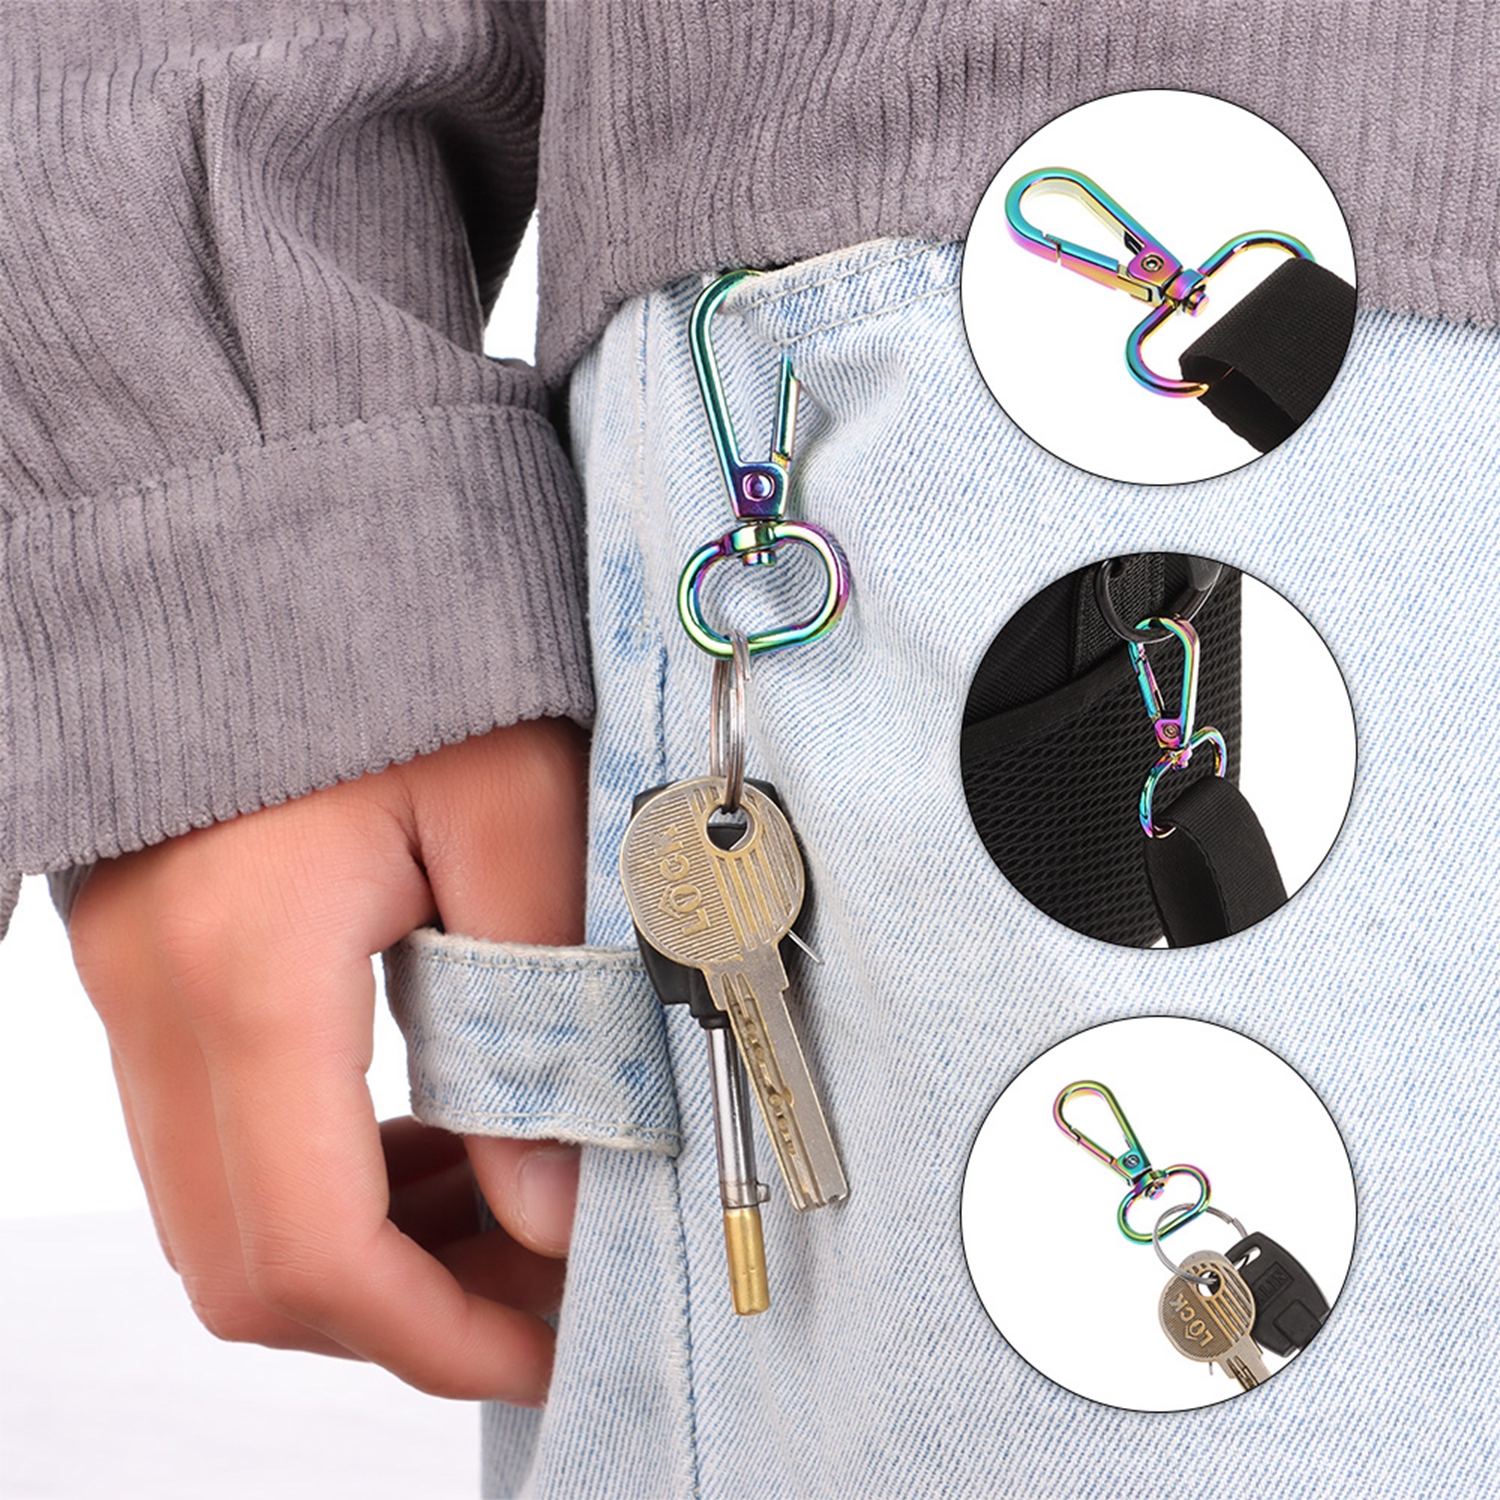 ZHANXENG498 5Pcs กุญแจคุณภาพสูงแหวนโซ่จูงสุนัขปลอกคอหัวเข็มขัดสายคล้องไหล่ Clasp กระเป๋าหนังหัวเข็มขัดหมุนกุ้งก้ามกรามกระเป๋าถือคลิป